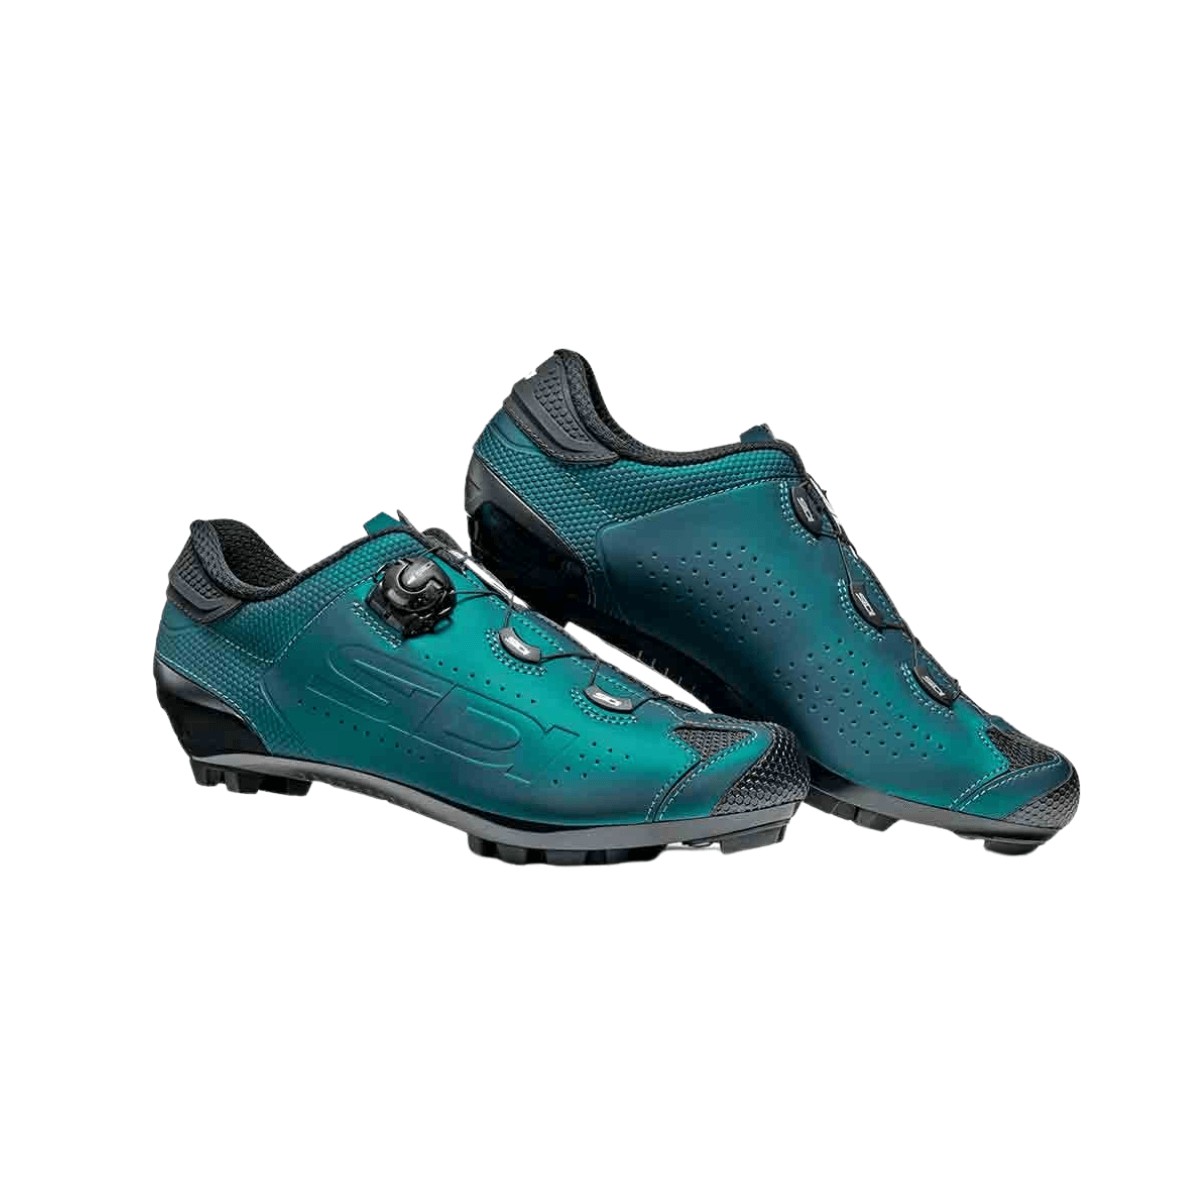 Sapatos Sidi MTB Dust Verde Azul AW22, Tamanho 41 - EUR